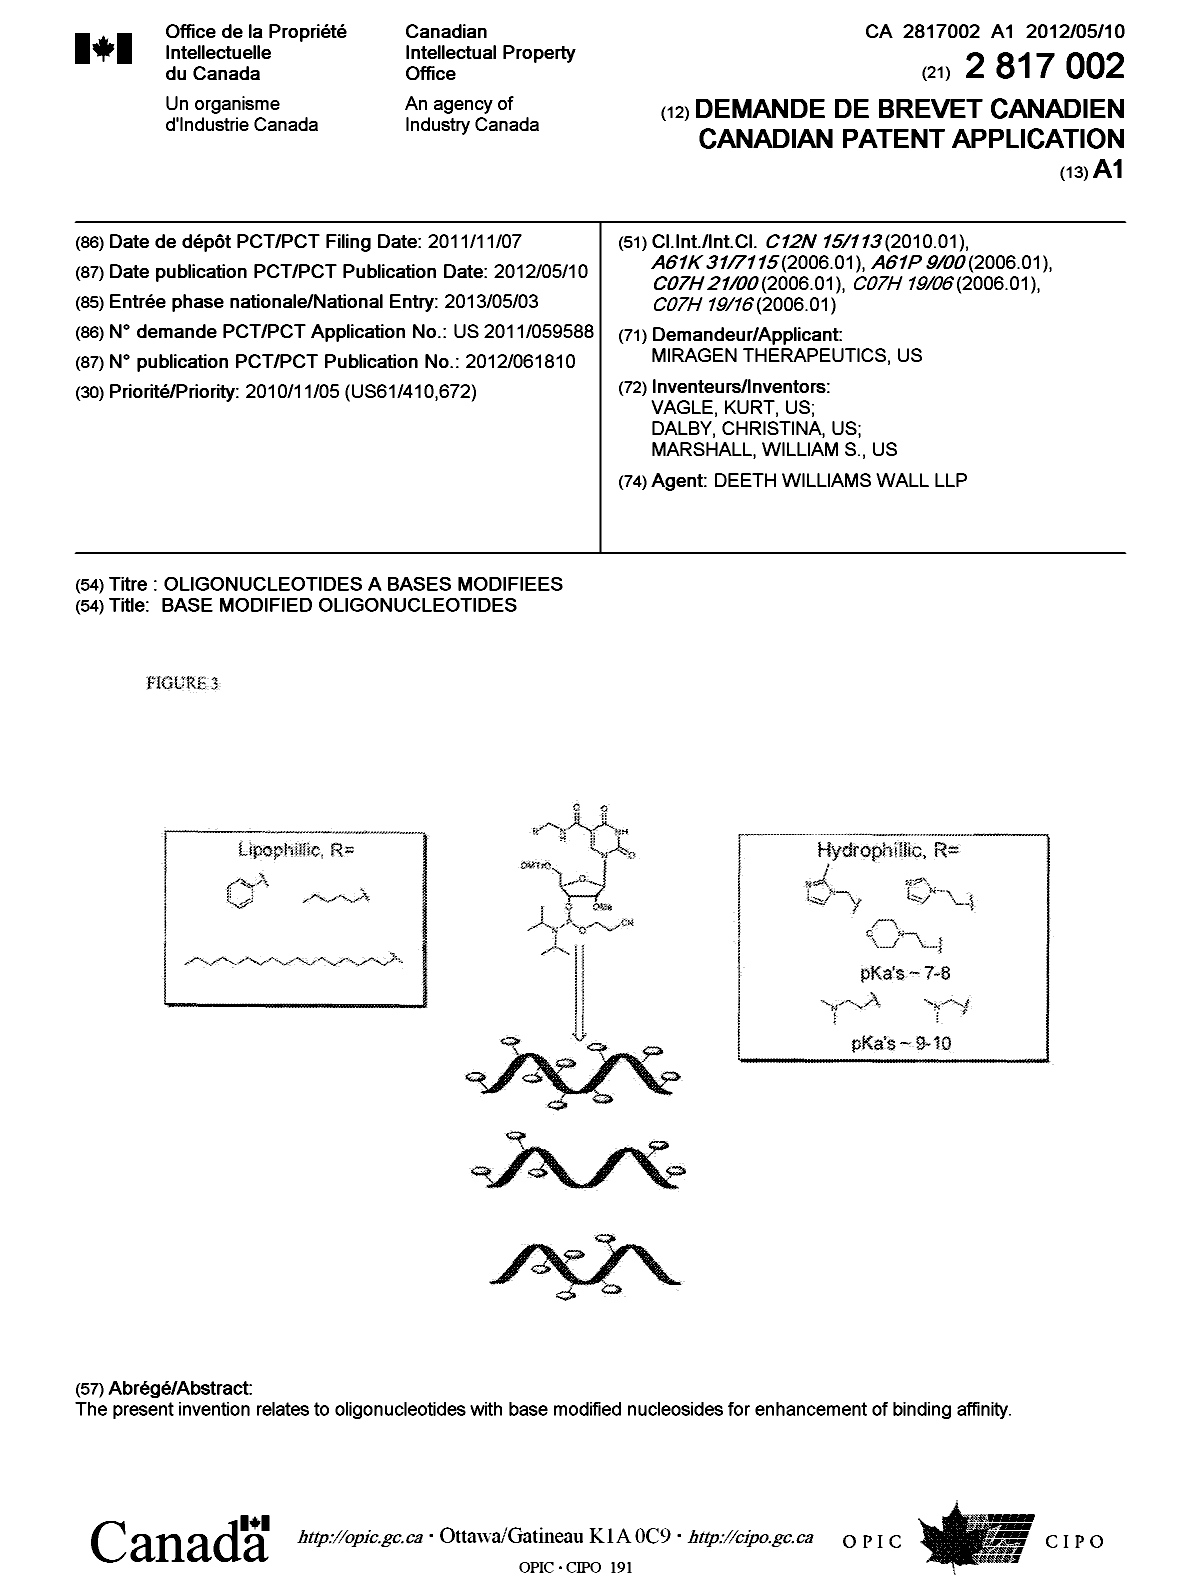 Document de brevet canadien 2817002. Page couverture 20130710. Image 1 de 1